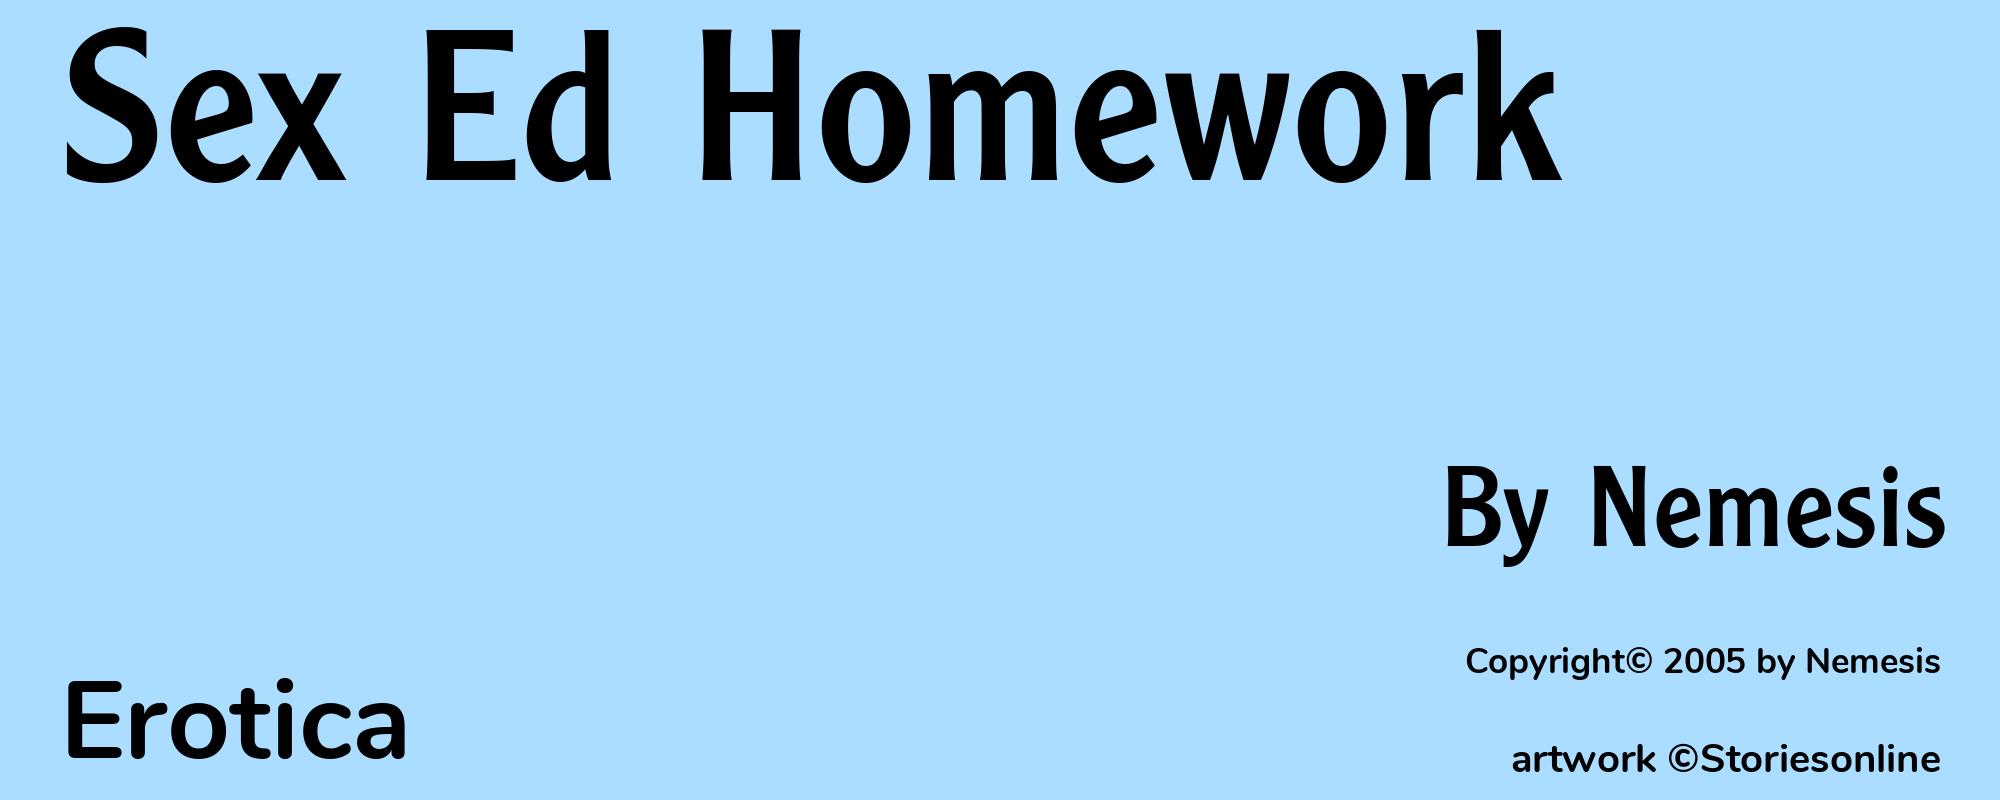 Sex Ed Homework - Cover